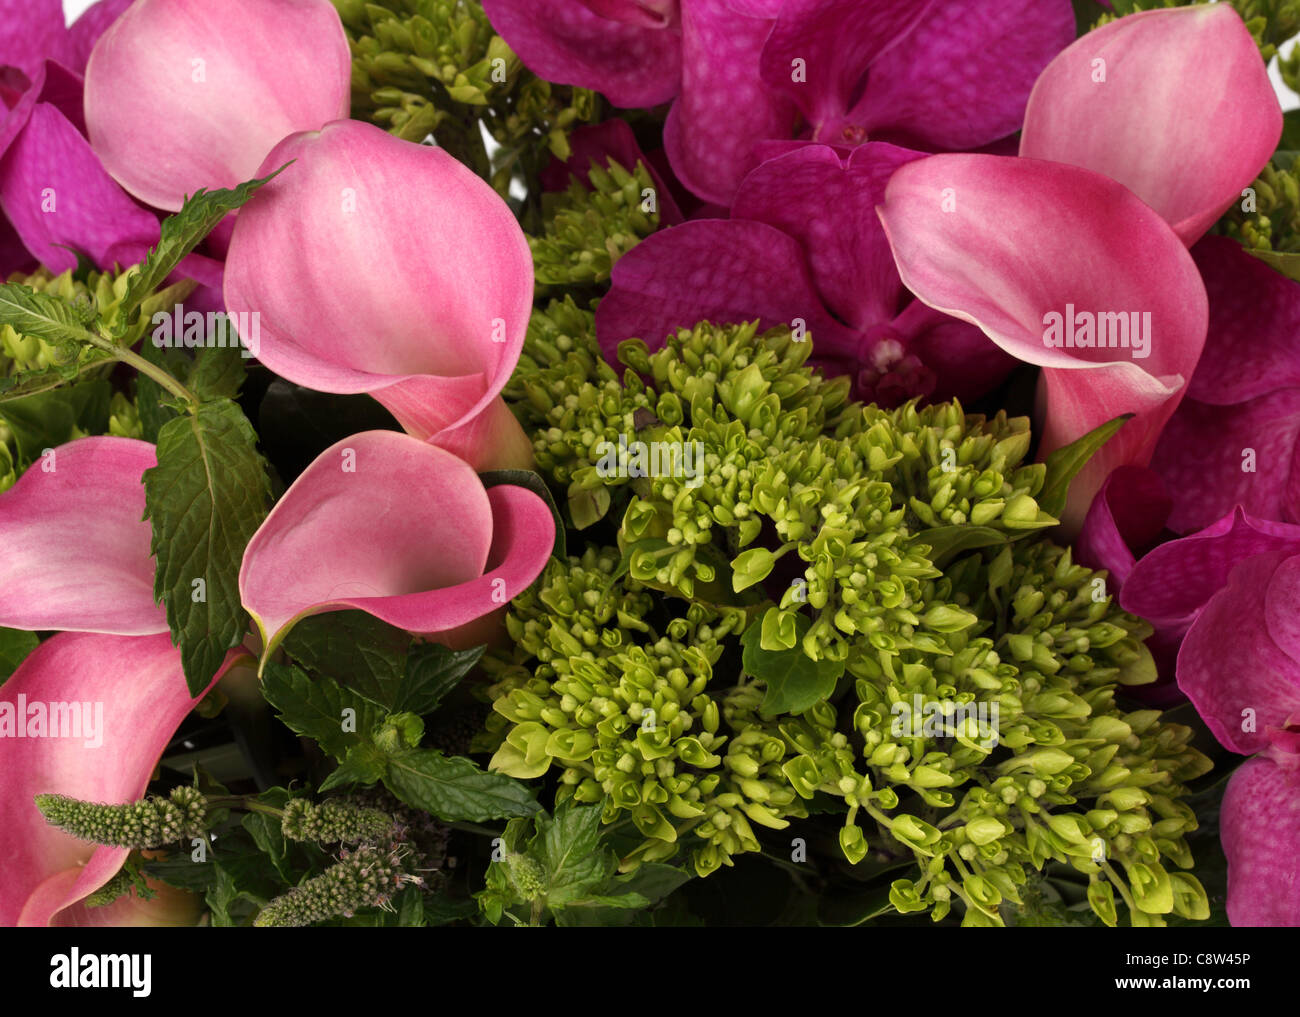 Eine Nahaufnahme von einem bunten Blumenstrauß. Rosa Calla-Lilien, lila Vanda Orchideen, grüne unbekannte sprühen. Stockfoto